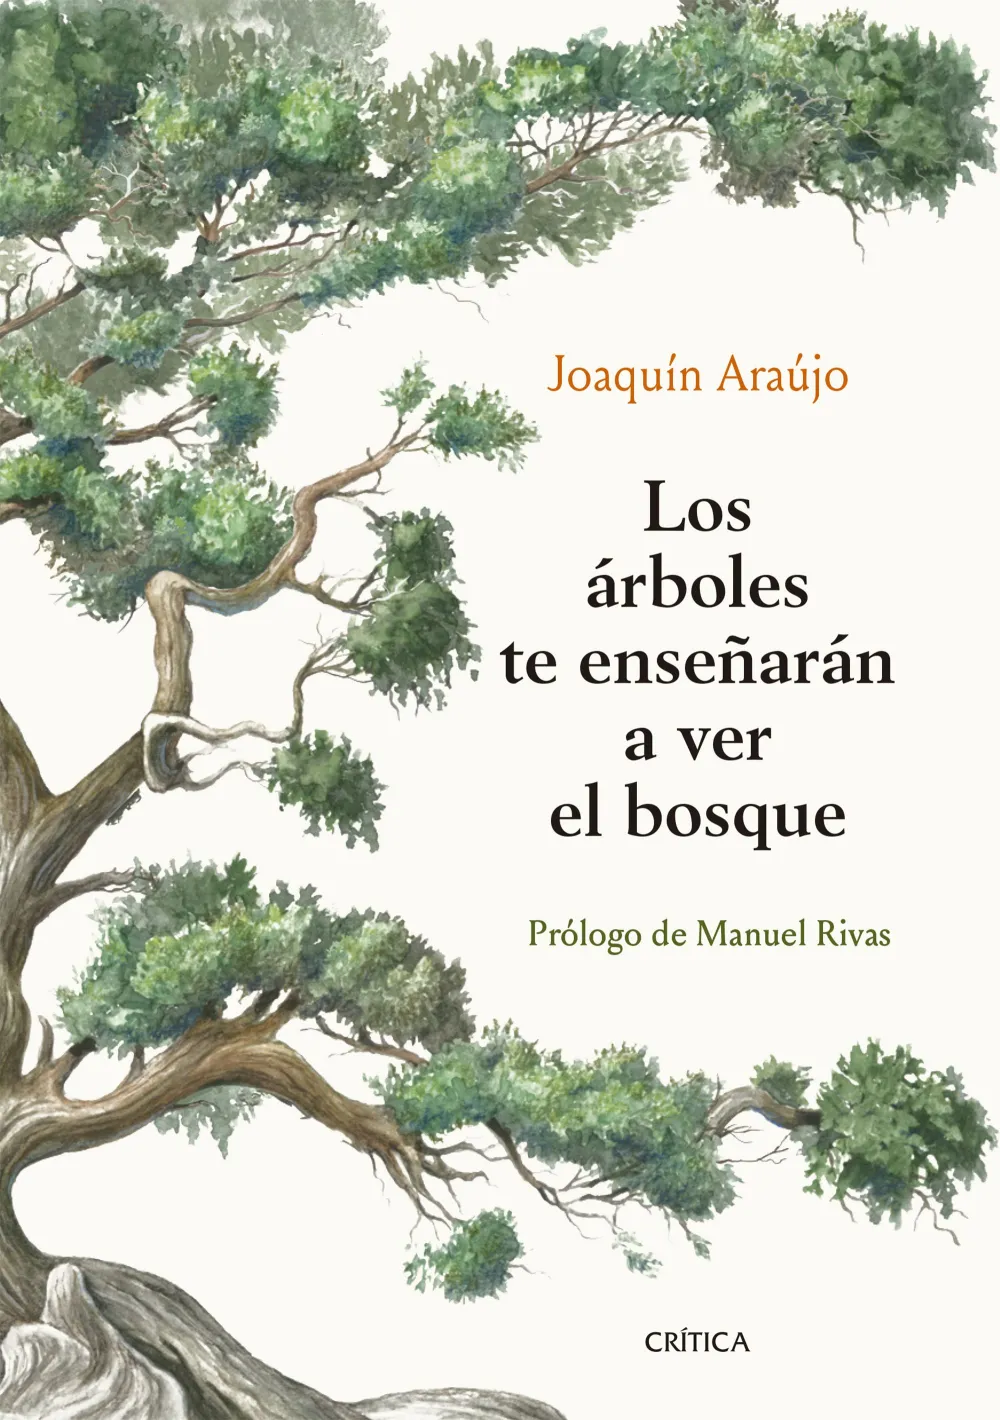 Los árboles te enseñarán a ver el bosque. Joaquín Araújo. Prólogo de Manuel Rivas.